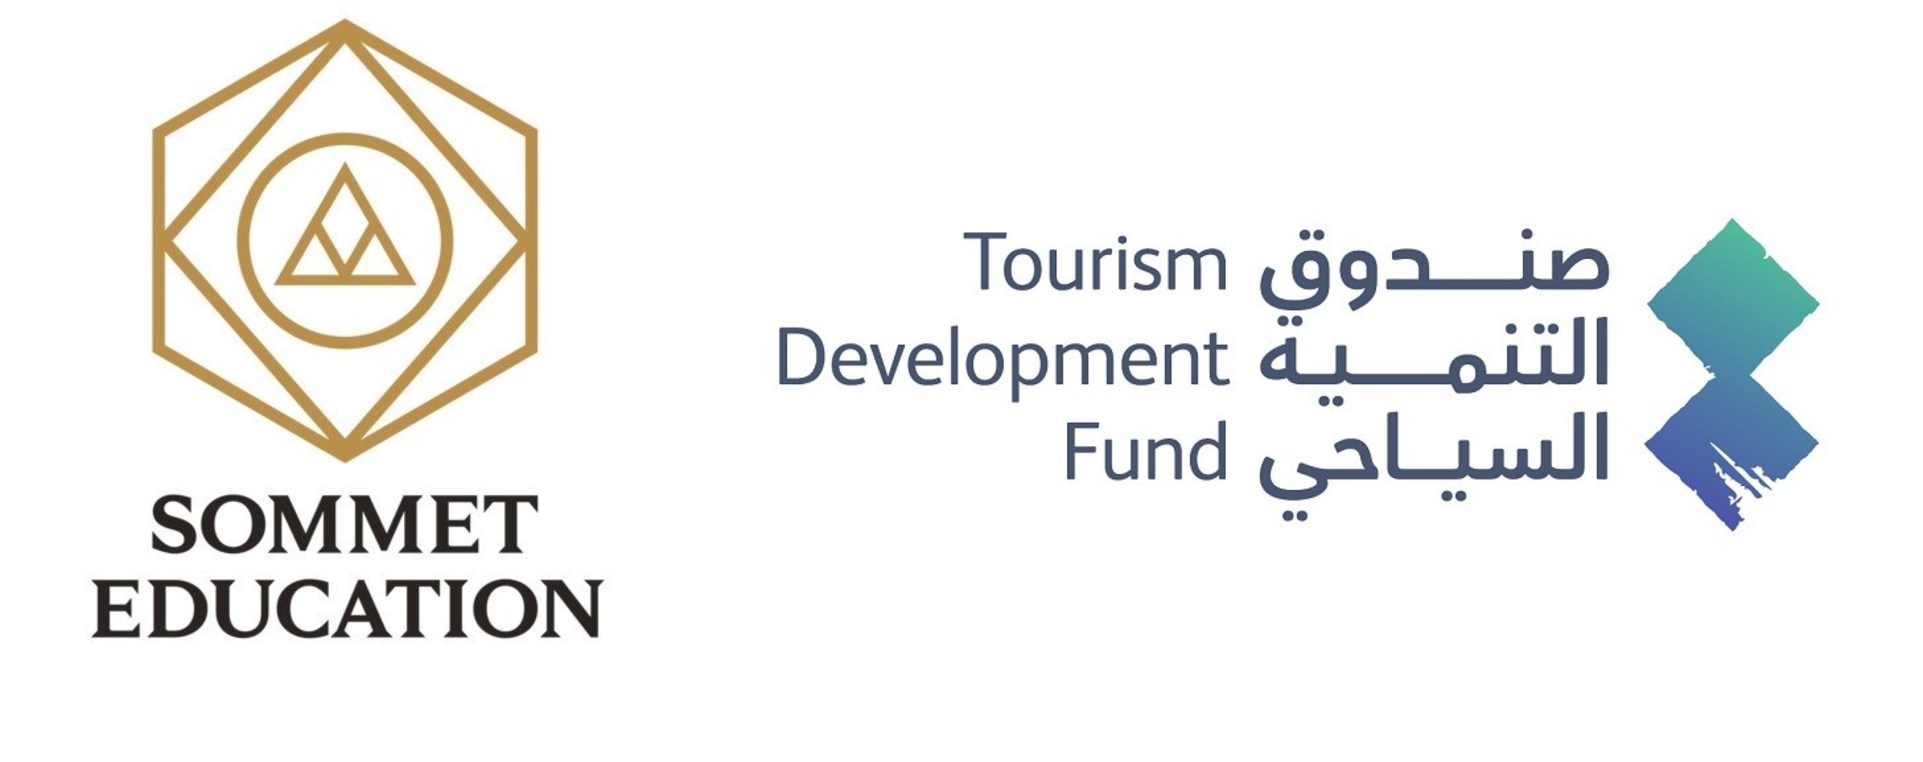 Tourism Development Fund (TDF) 